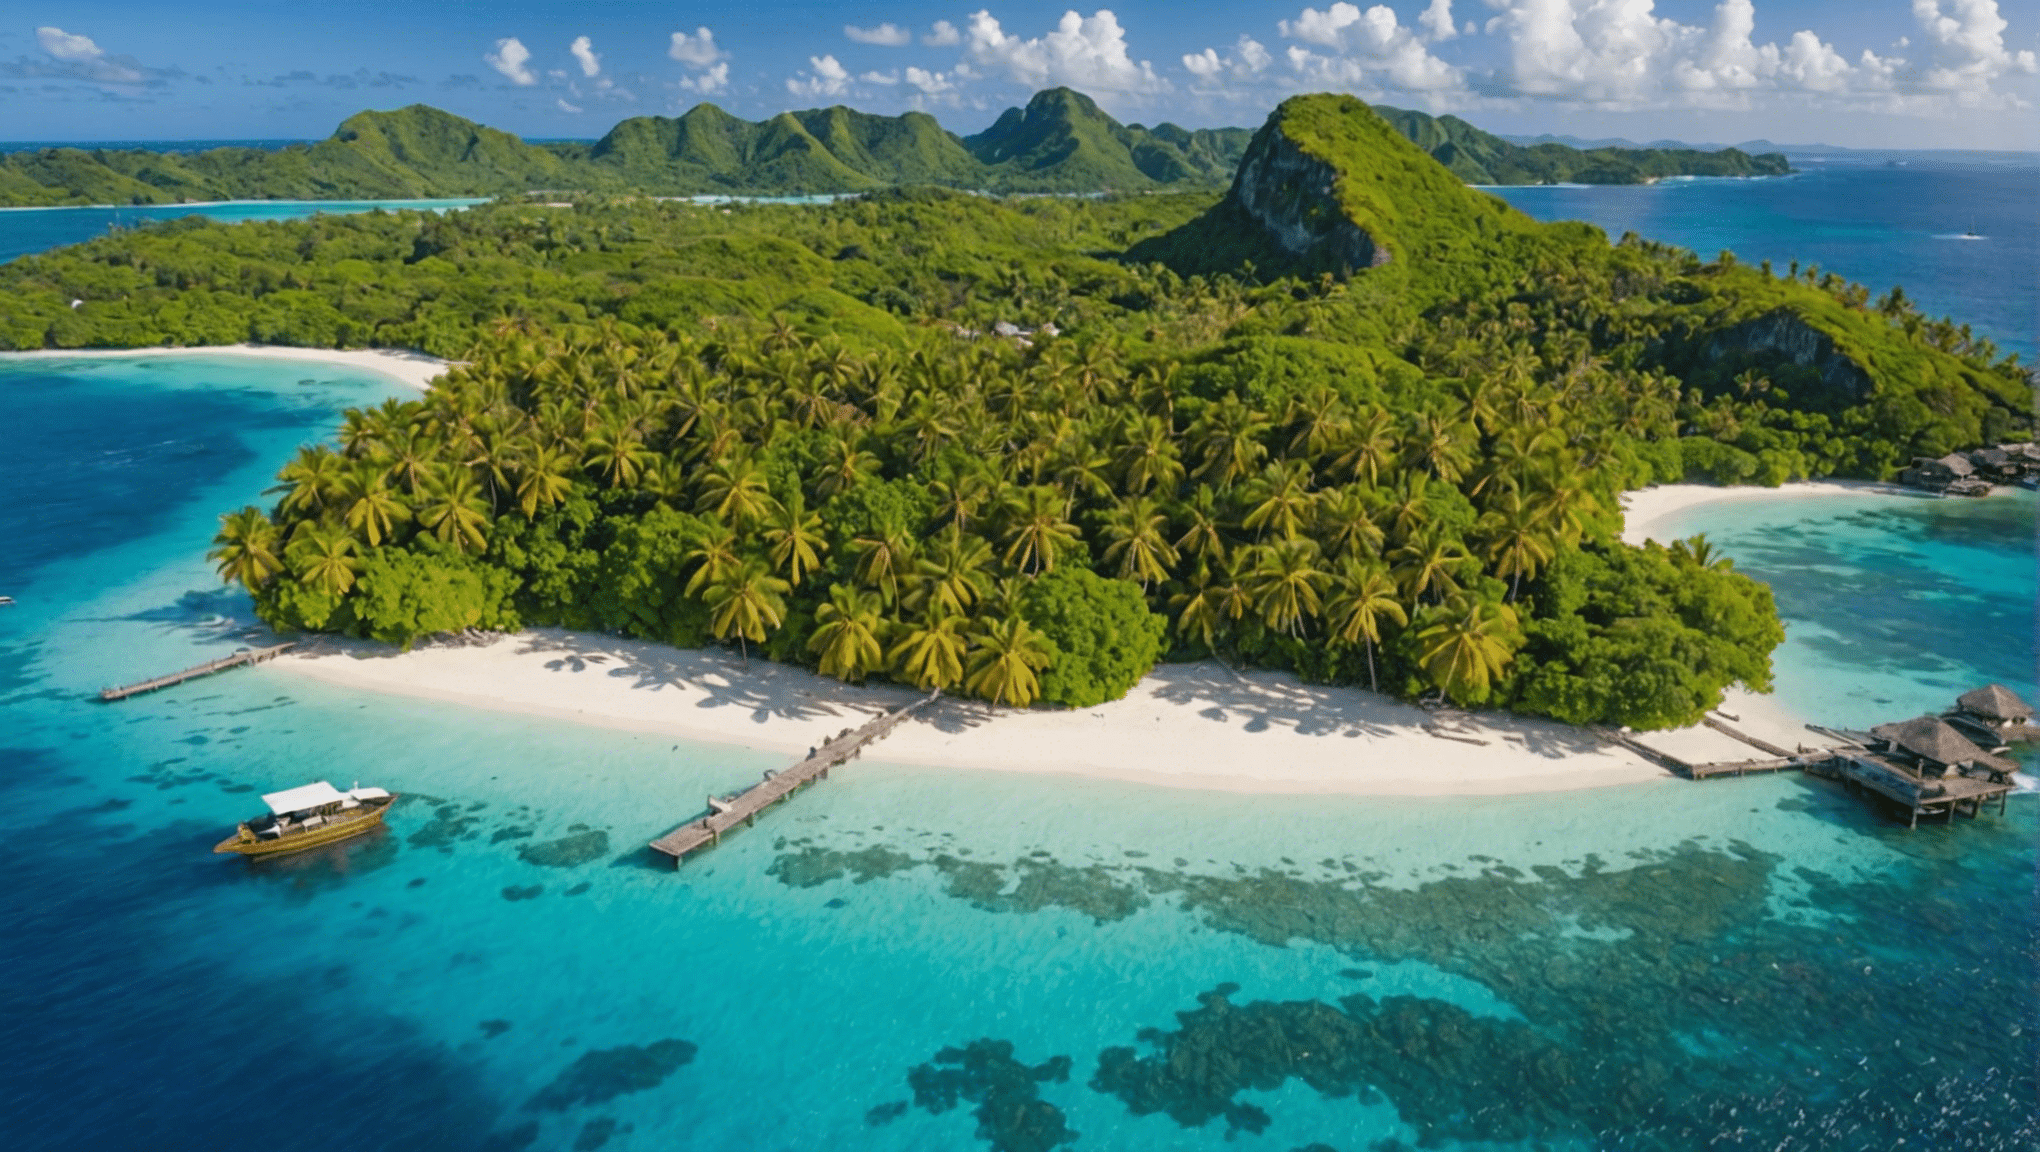 descubra as 10 ilhas paradisíacas para visitar pelo menos uma vez na vida e deixe-se levar pela beleza destes destinos de sonho.